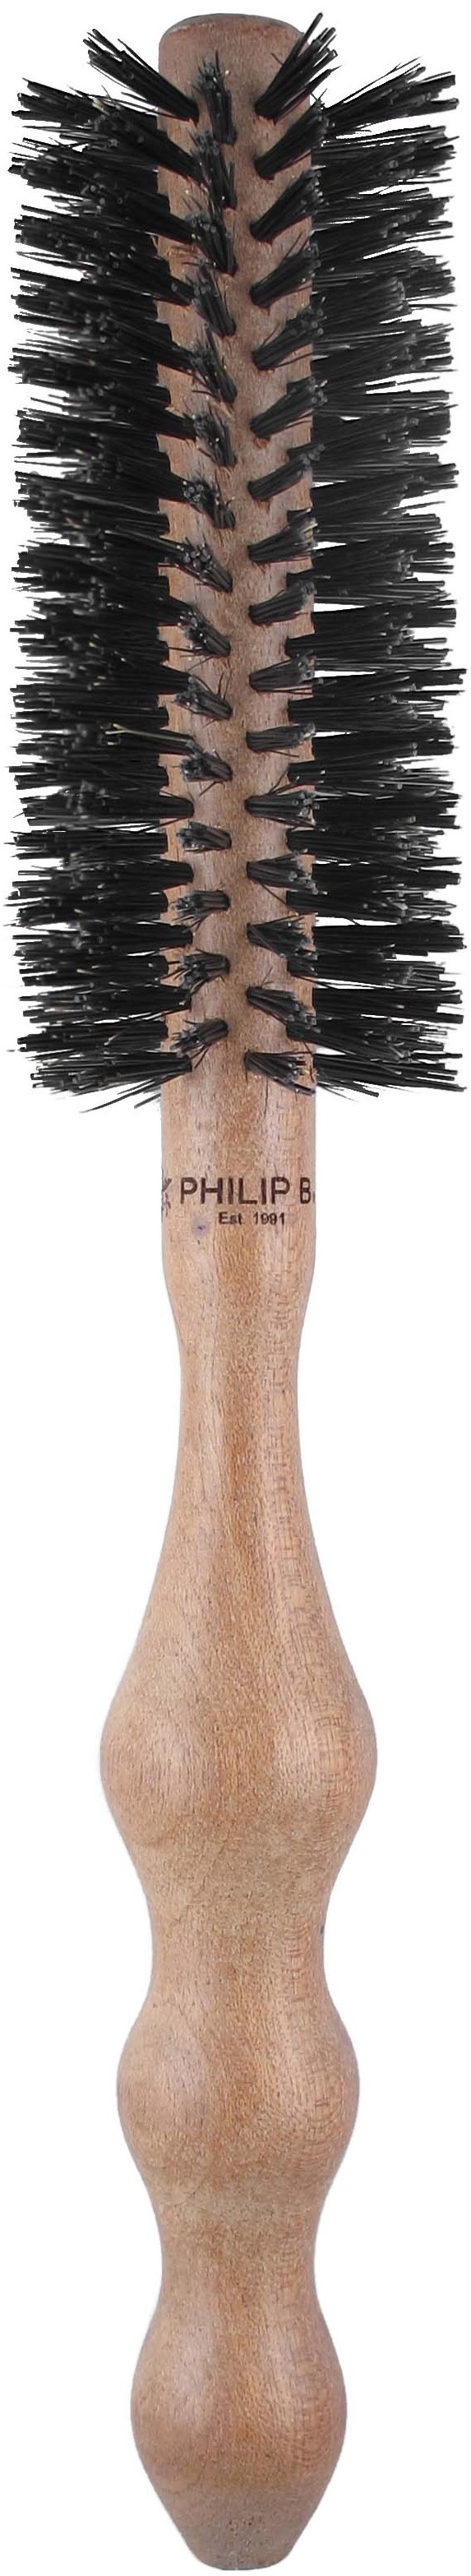 Philip B. Hairbrush Cleaner – Philip B. Botanicals